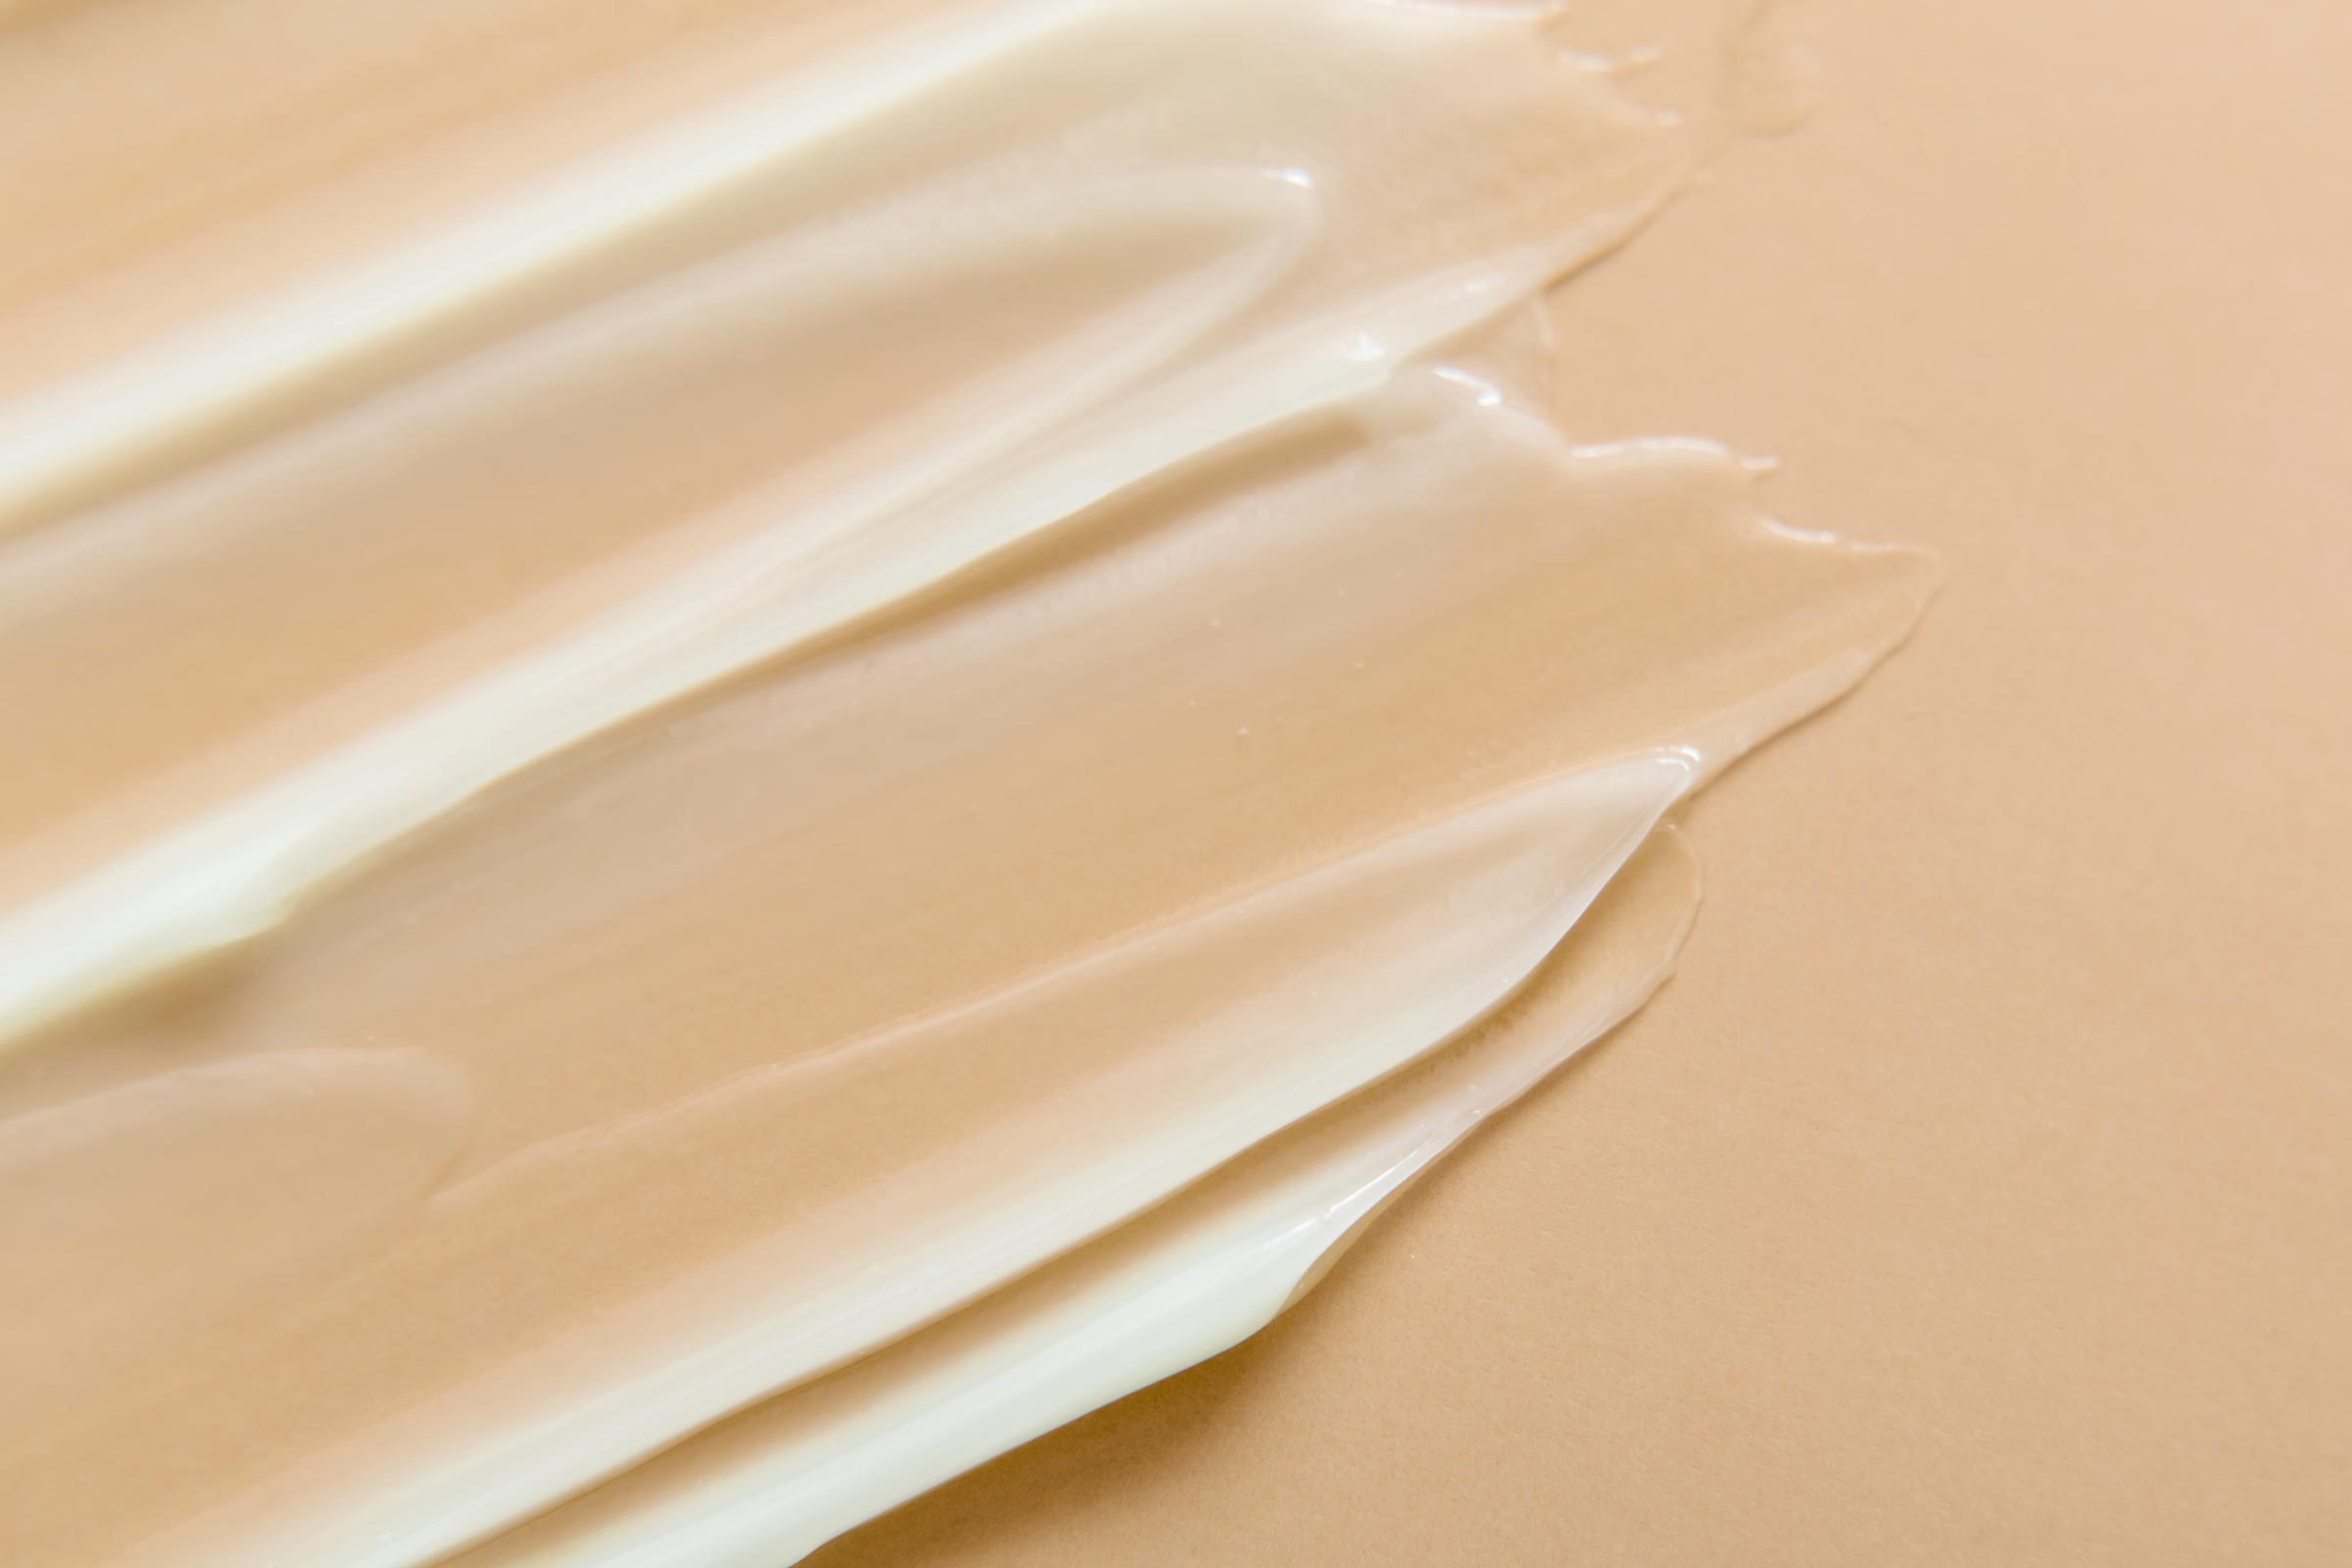 Liquid gel cream texture on beige background.